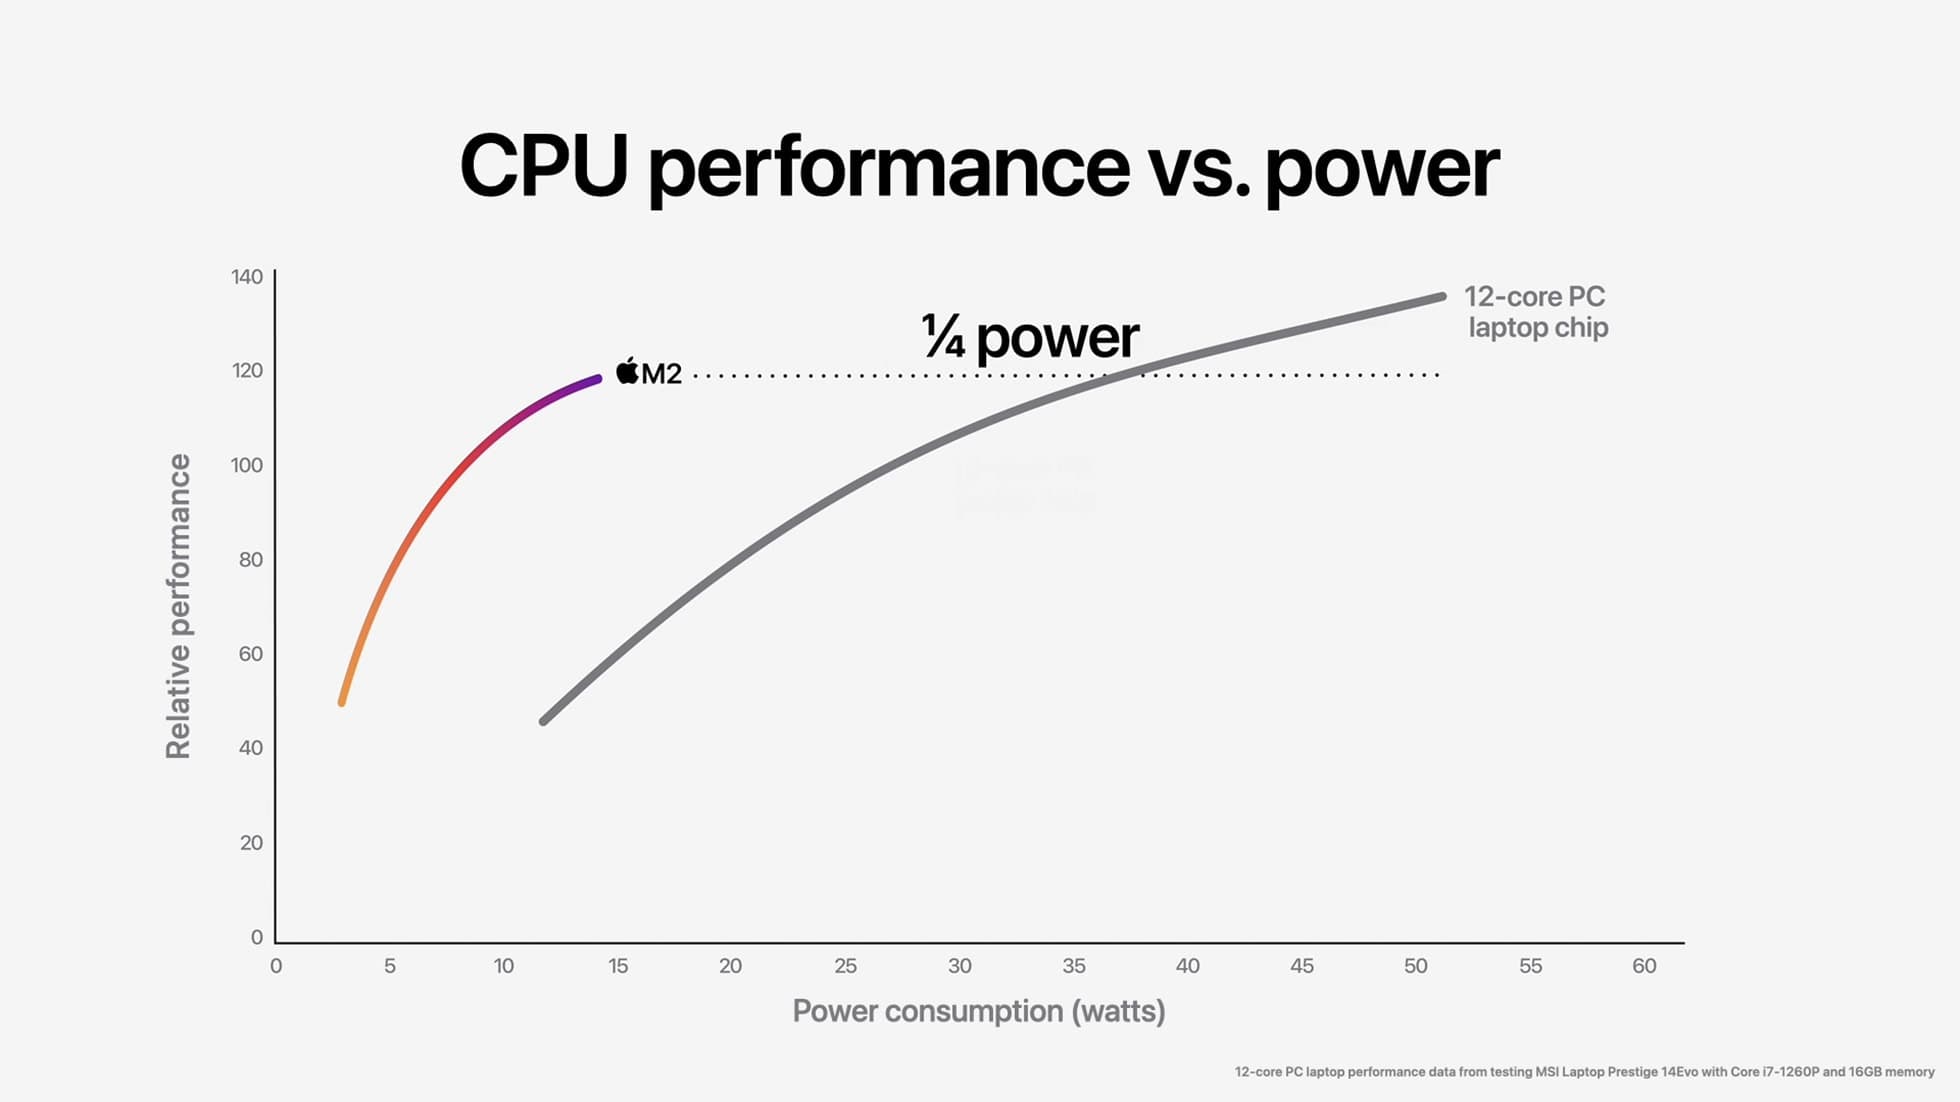 最新 12 核心 PC 笔记型电脑晶片需要使用极大功耗才能让效能提升。相较之下，M2 晶片仅需使用四分之一的功耗，即能达到 12 核心晶片 90% 的峰值效能。